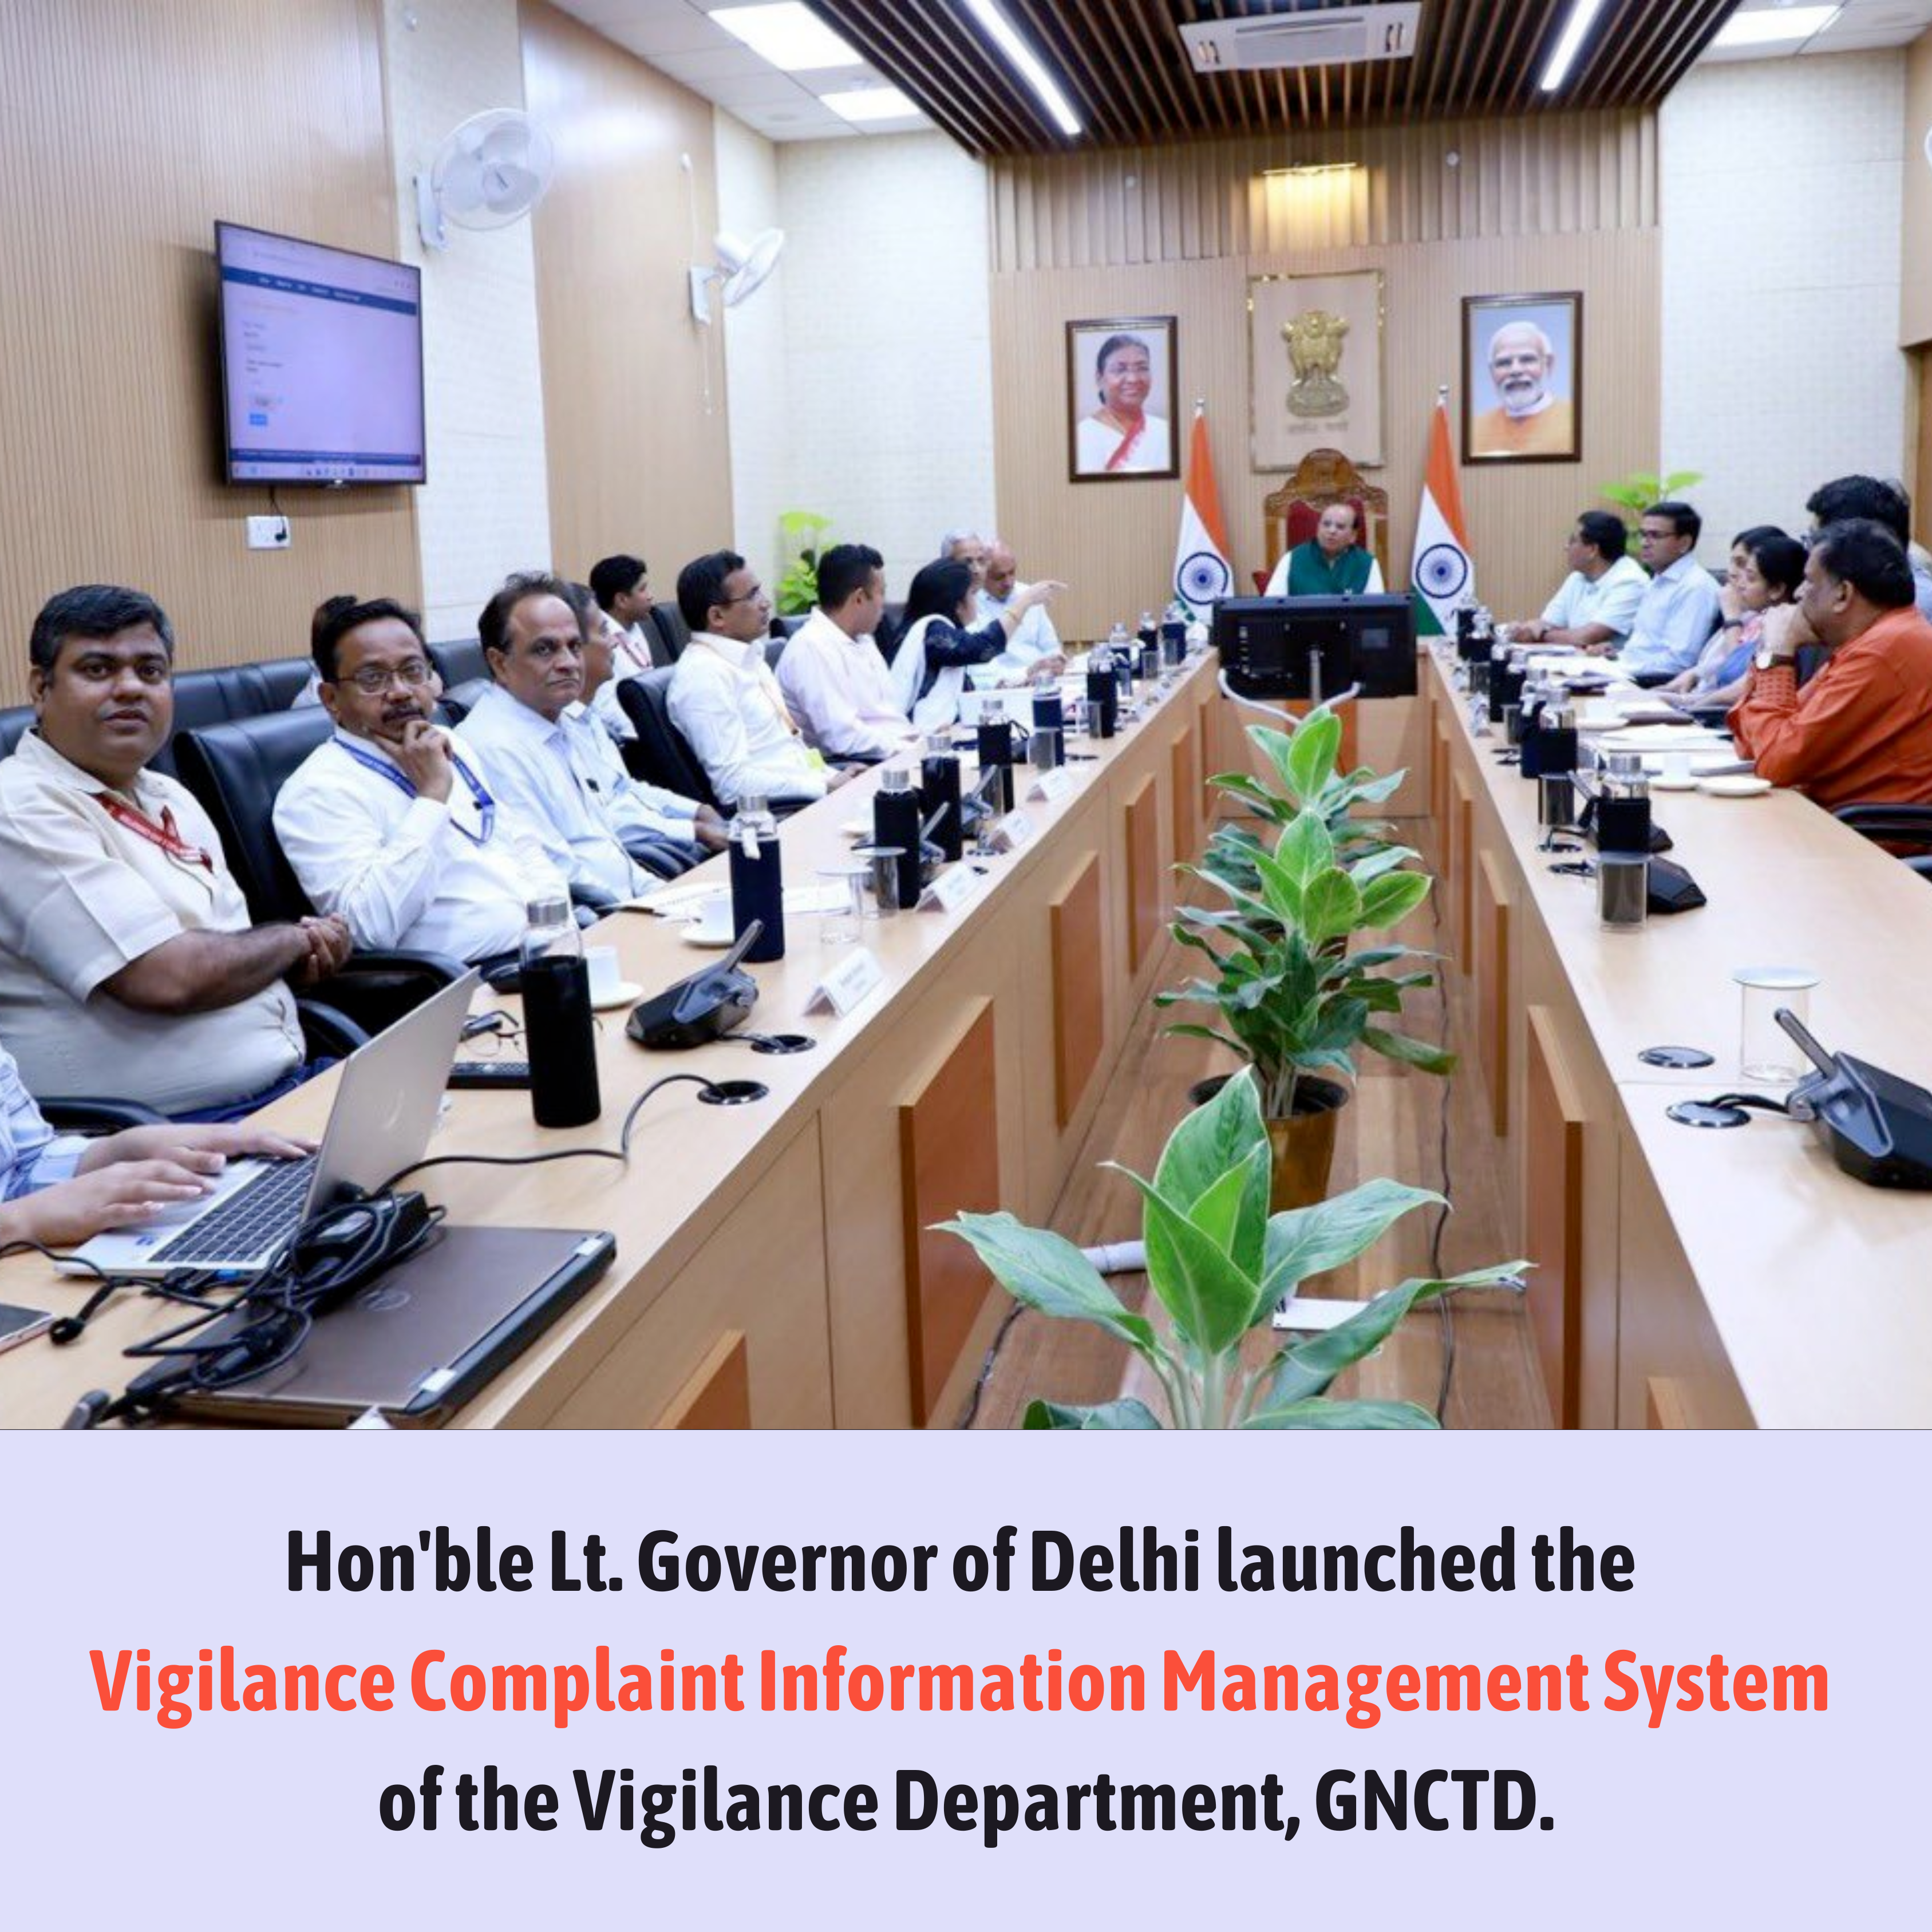 Image of दिल्ली के माननीय उपराज्यपाल ने सतर्कता विभाग, जीएनसीटीडी की सतर्कता शिकायत सूचना प्रबंधन प्रणाली का शुभारंभ किया।